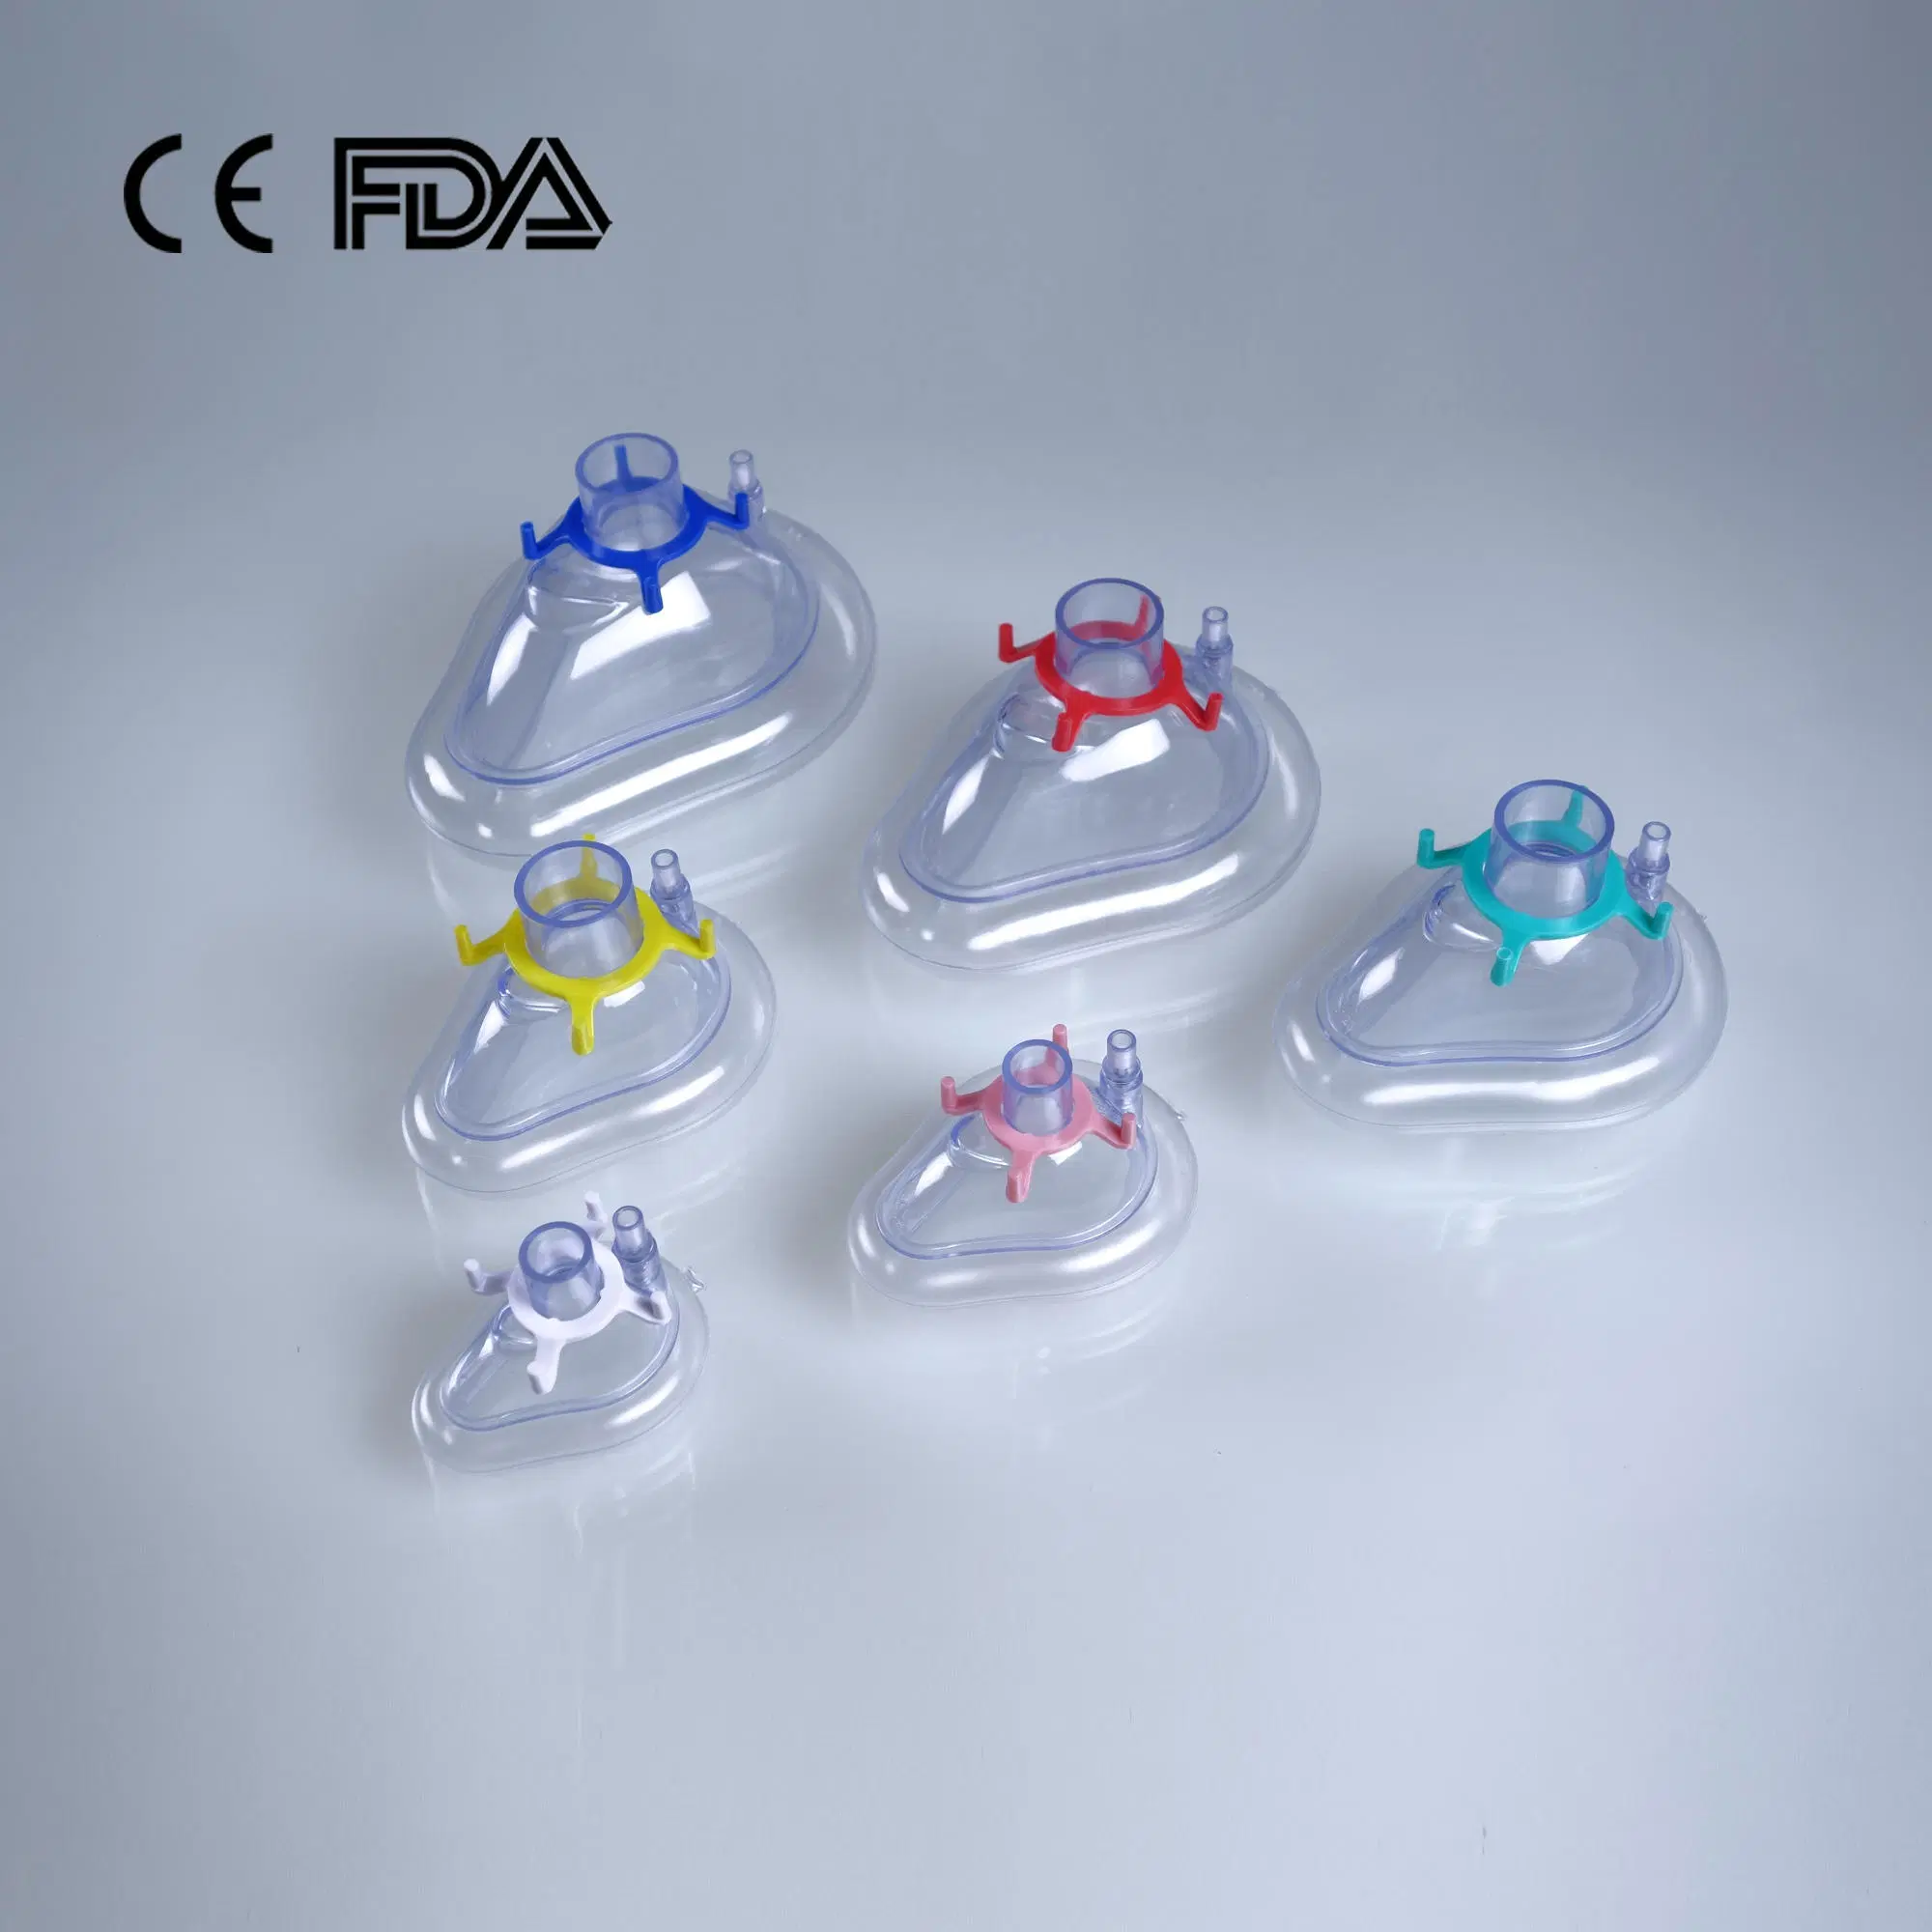 Medizinische Einwegmaske für chirurgische PVC-Luftkissen mit CE-Kennzeichnung FDA